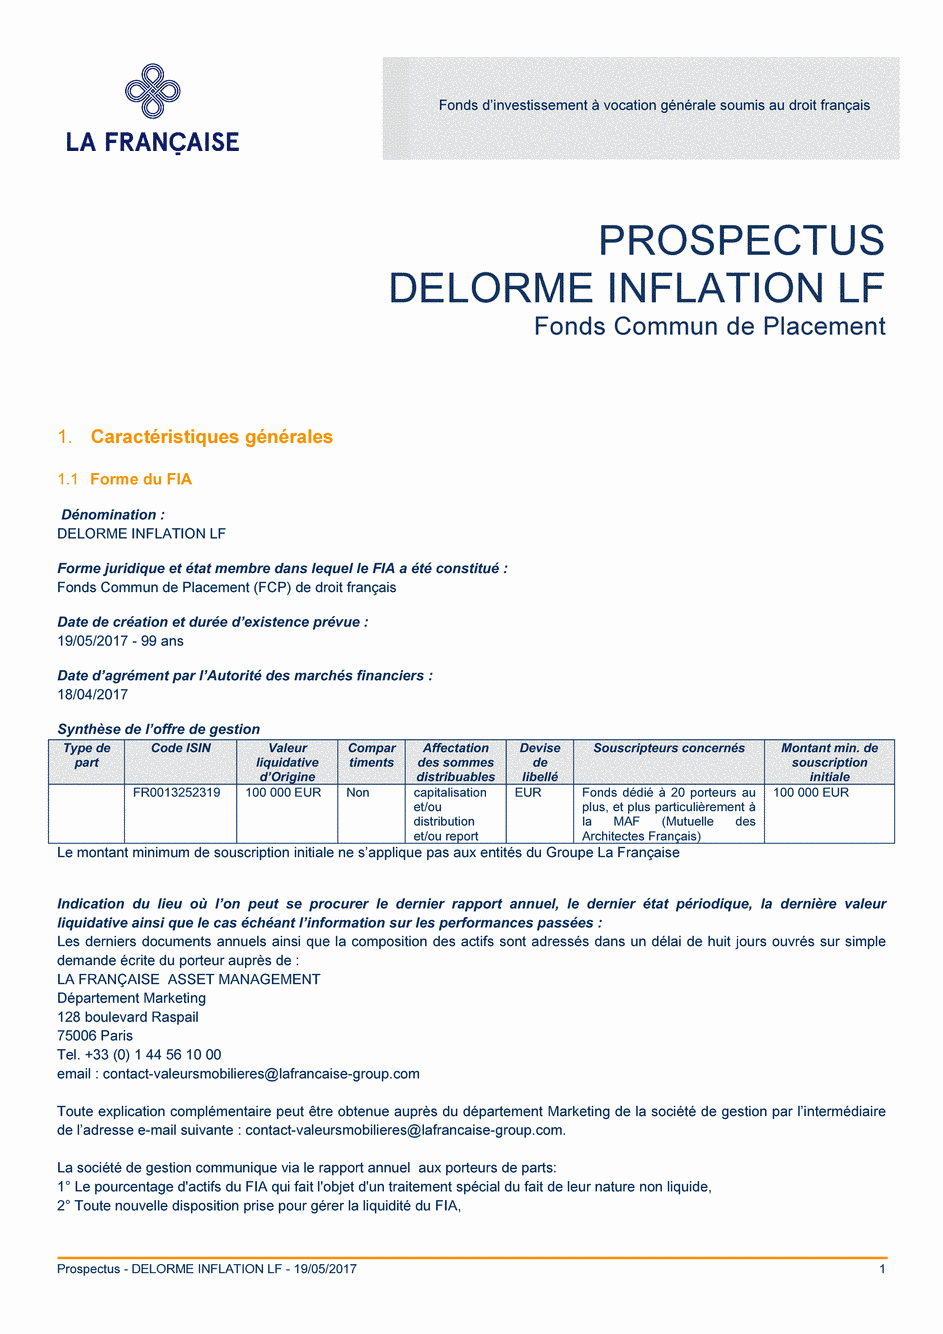 Prospectus FR0013252319 - 19/05/2017 - Français